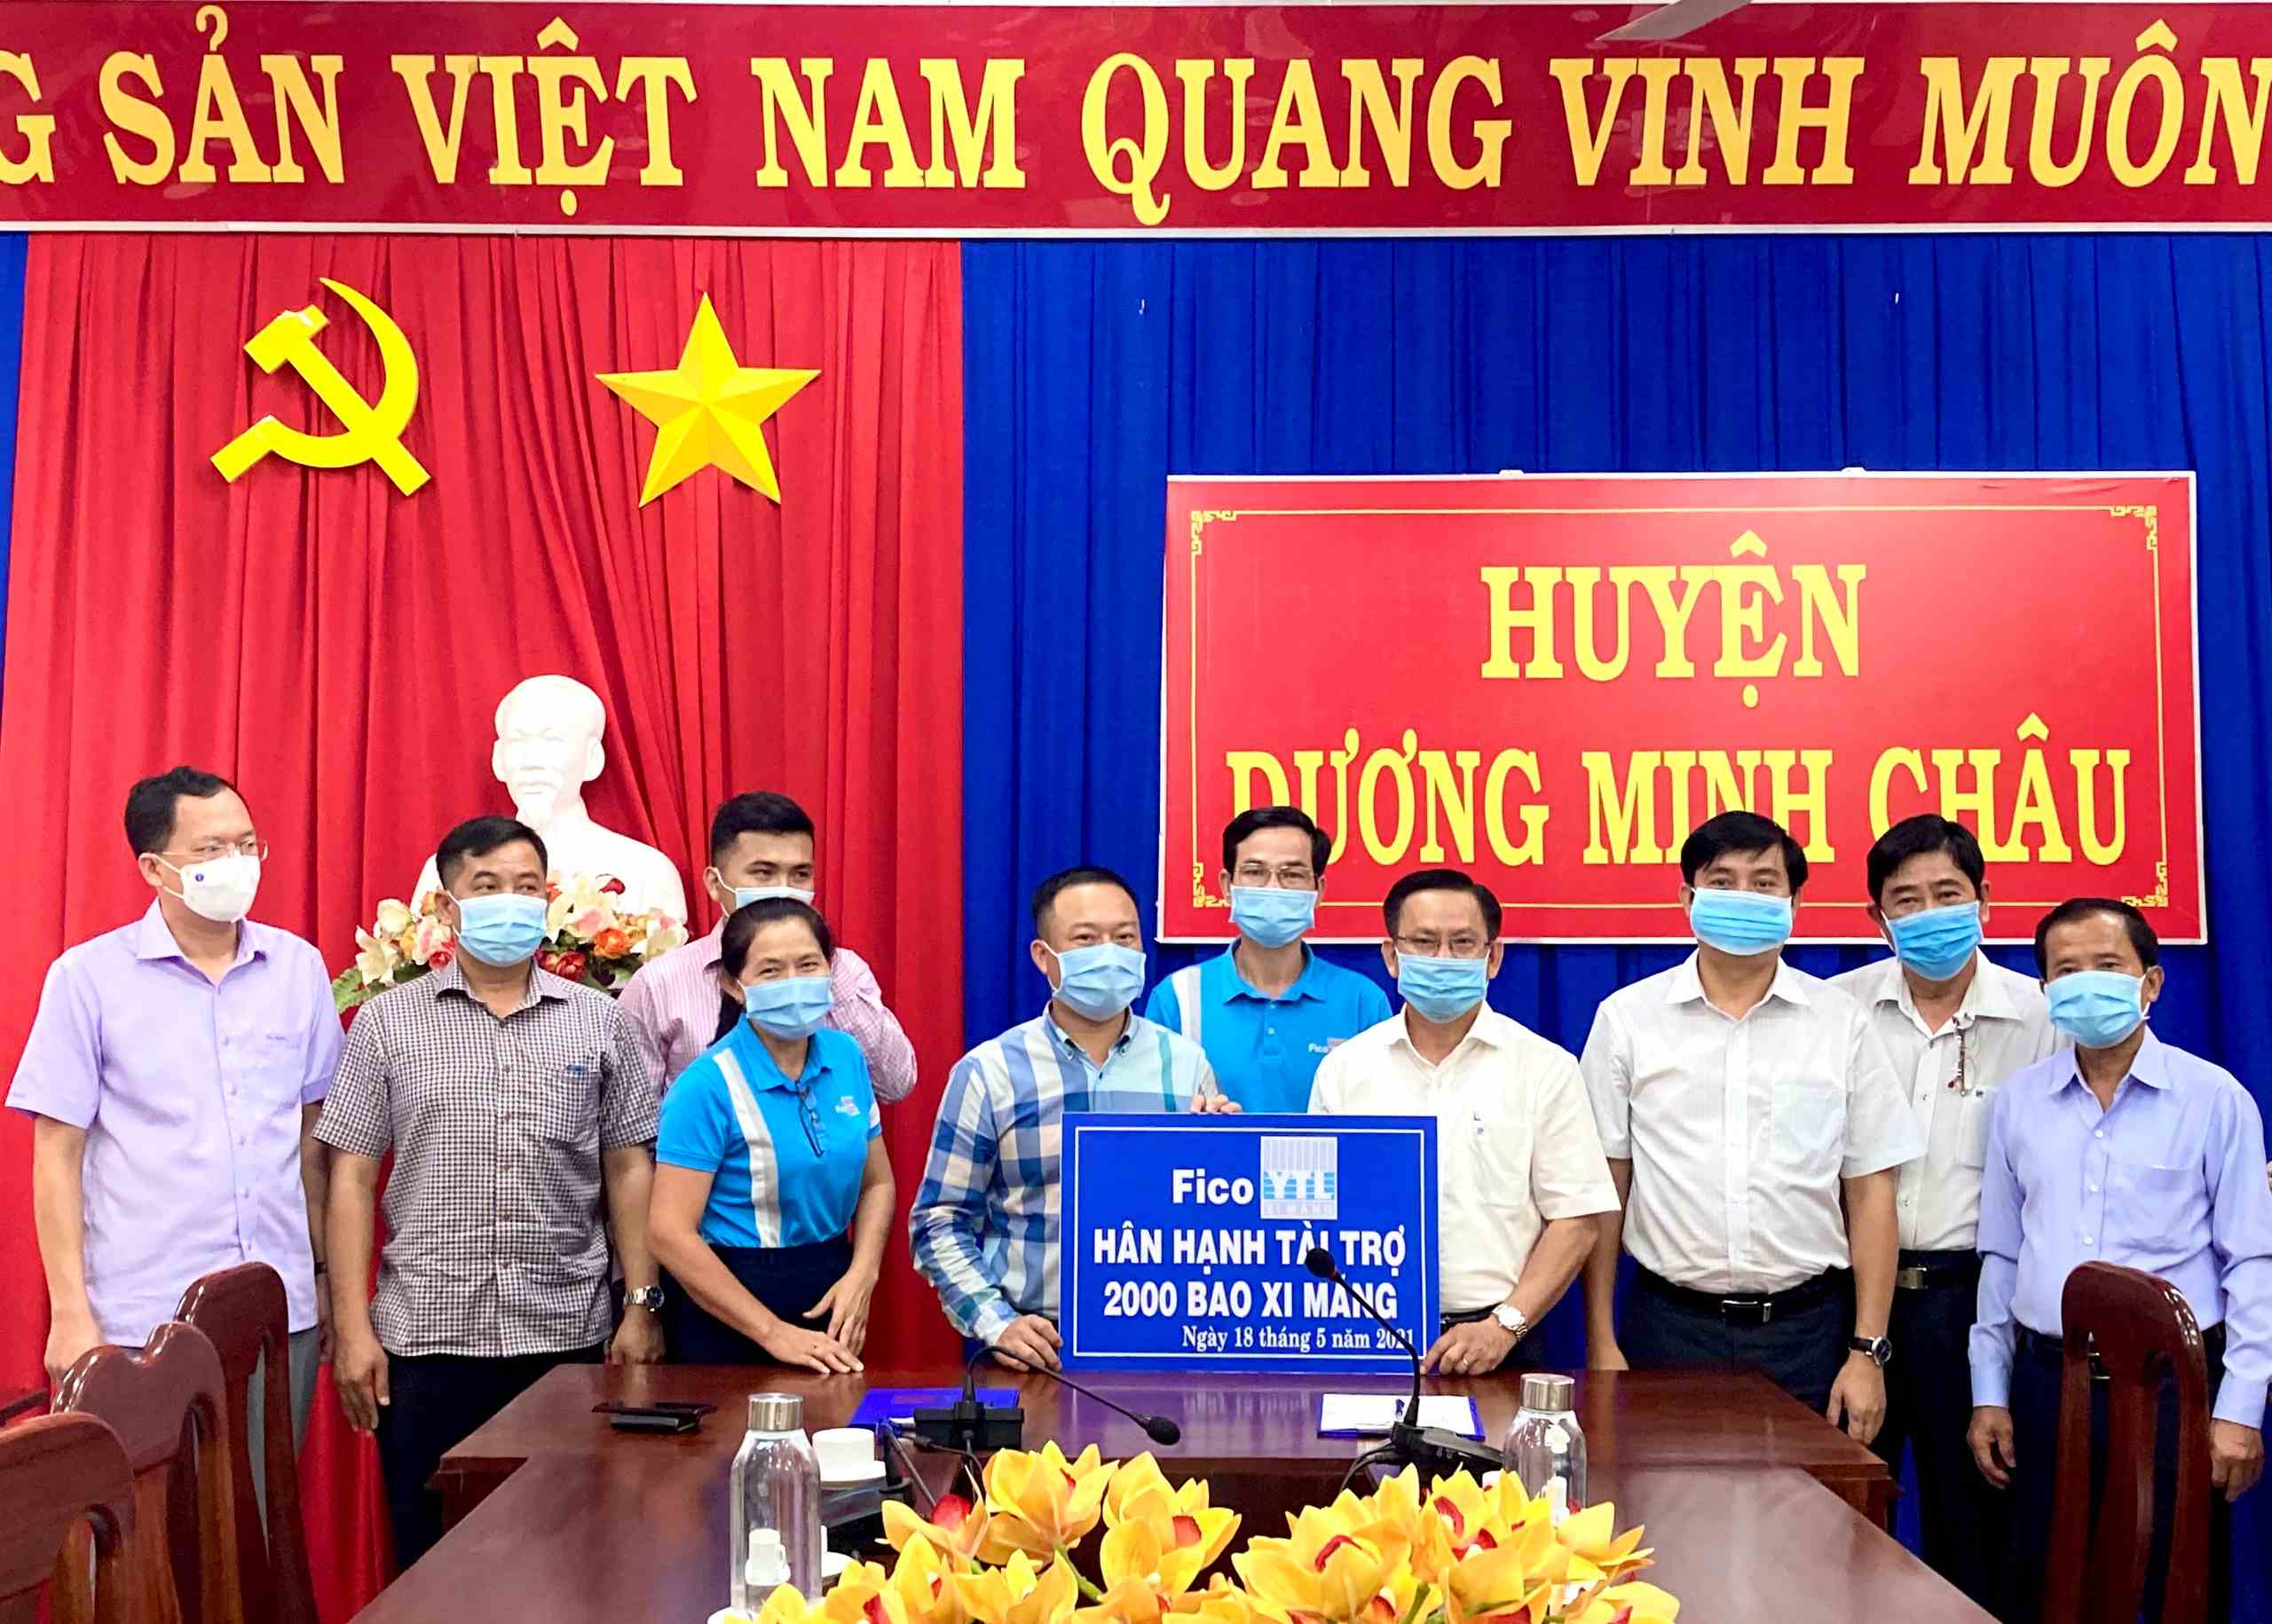 Xi măng Fico Tây Ninh tài trợ 2.000 bao xi măng cho huyện Dương Minh Châu